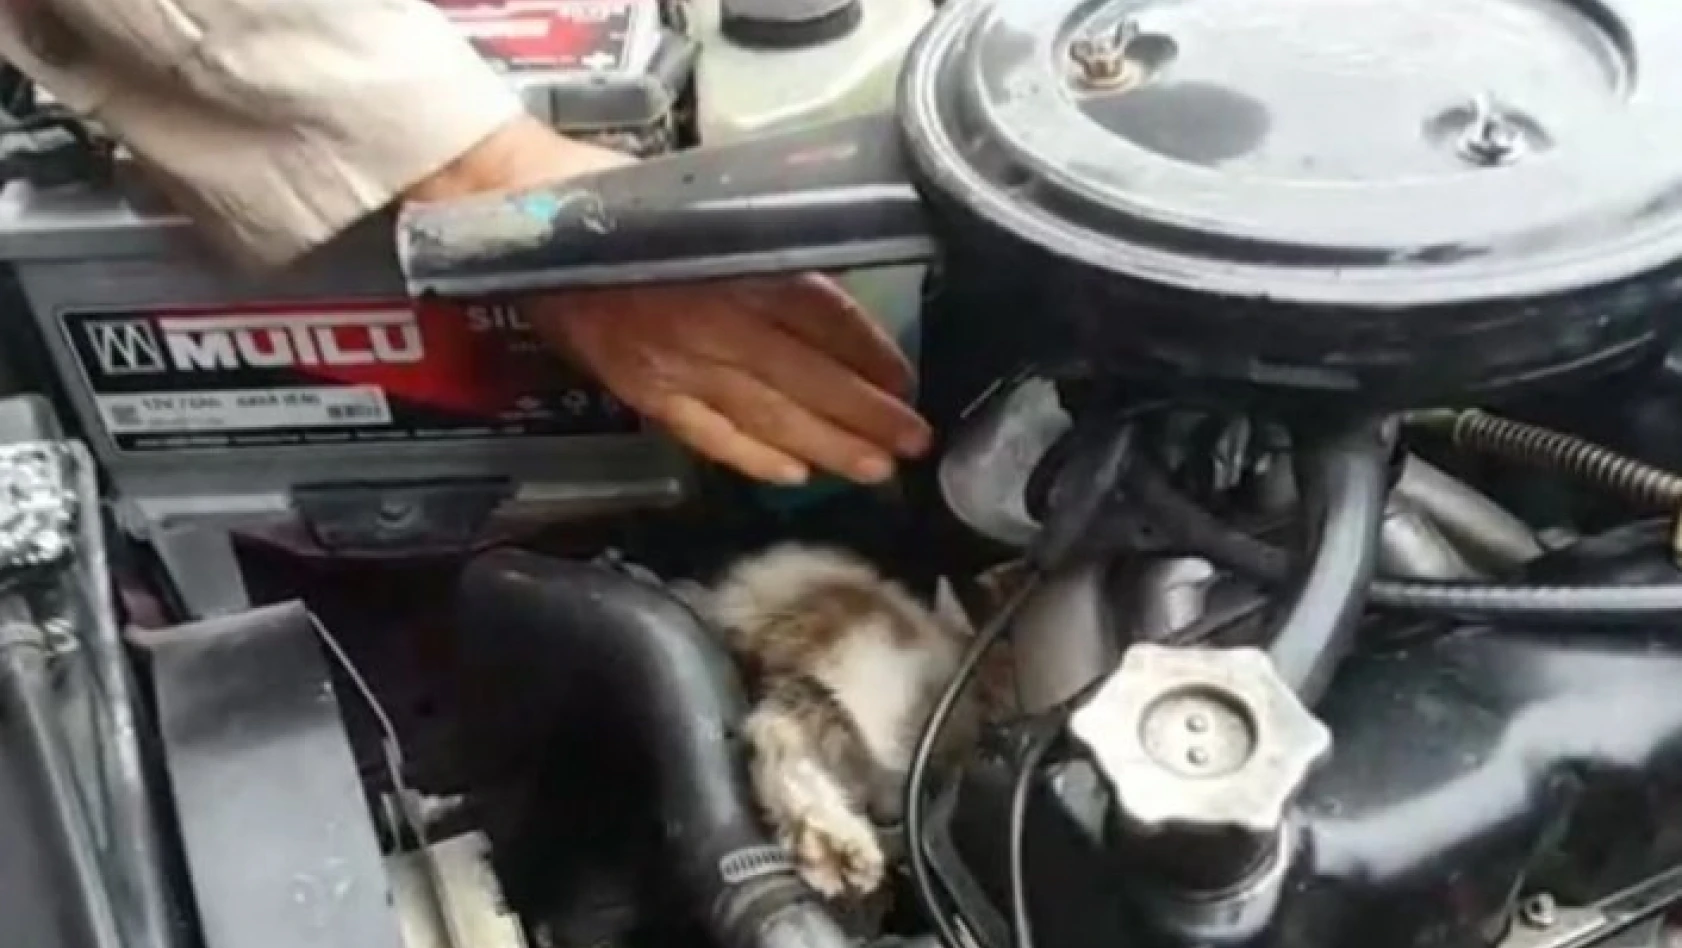 Seyir halindeki aracın motorundan kedi çıktı